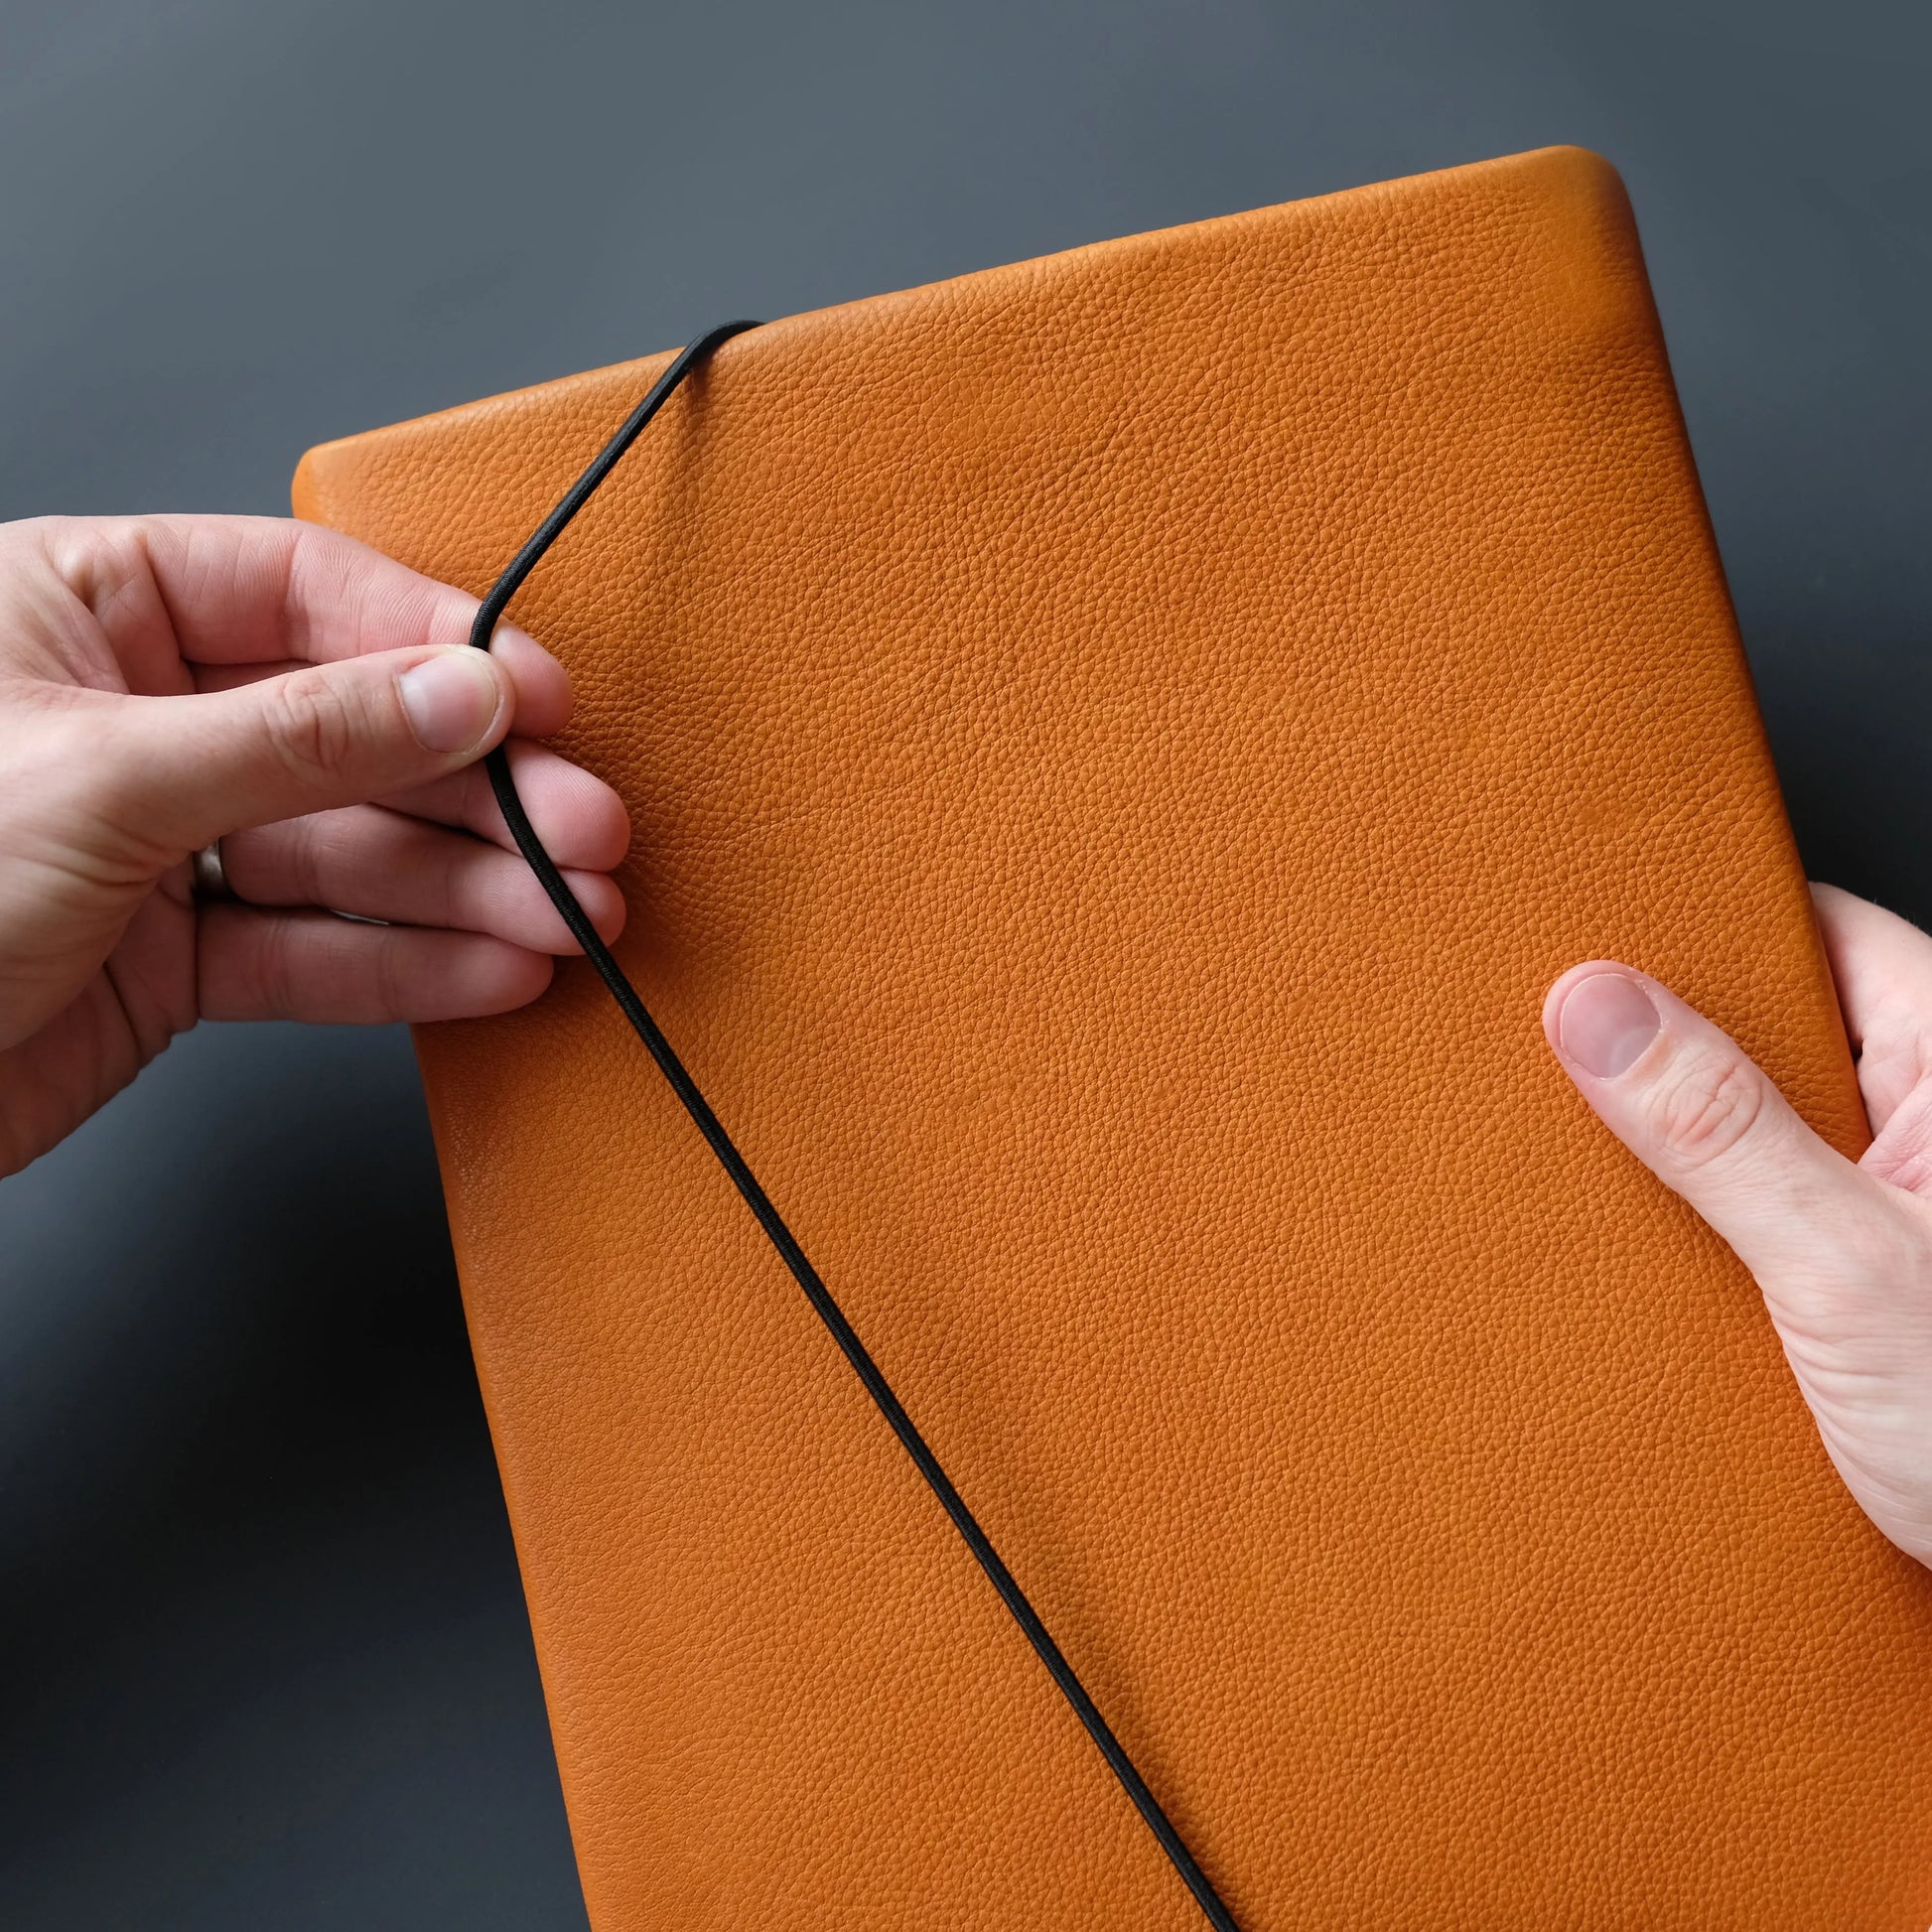 Macbookhülle aus orangefarbenem Leder wird mit schwarzer Gummikordel von zwei Händen geschlossen